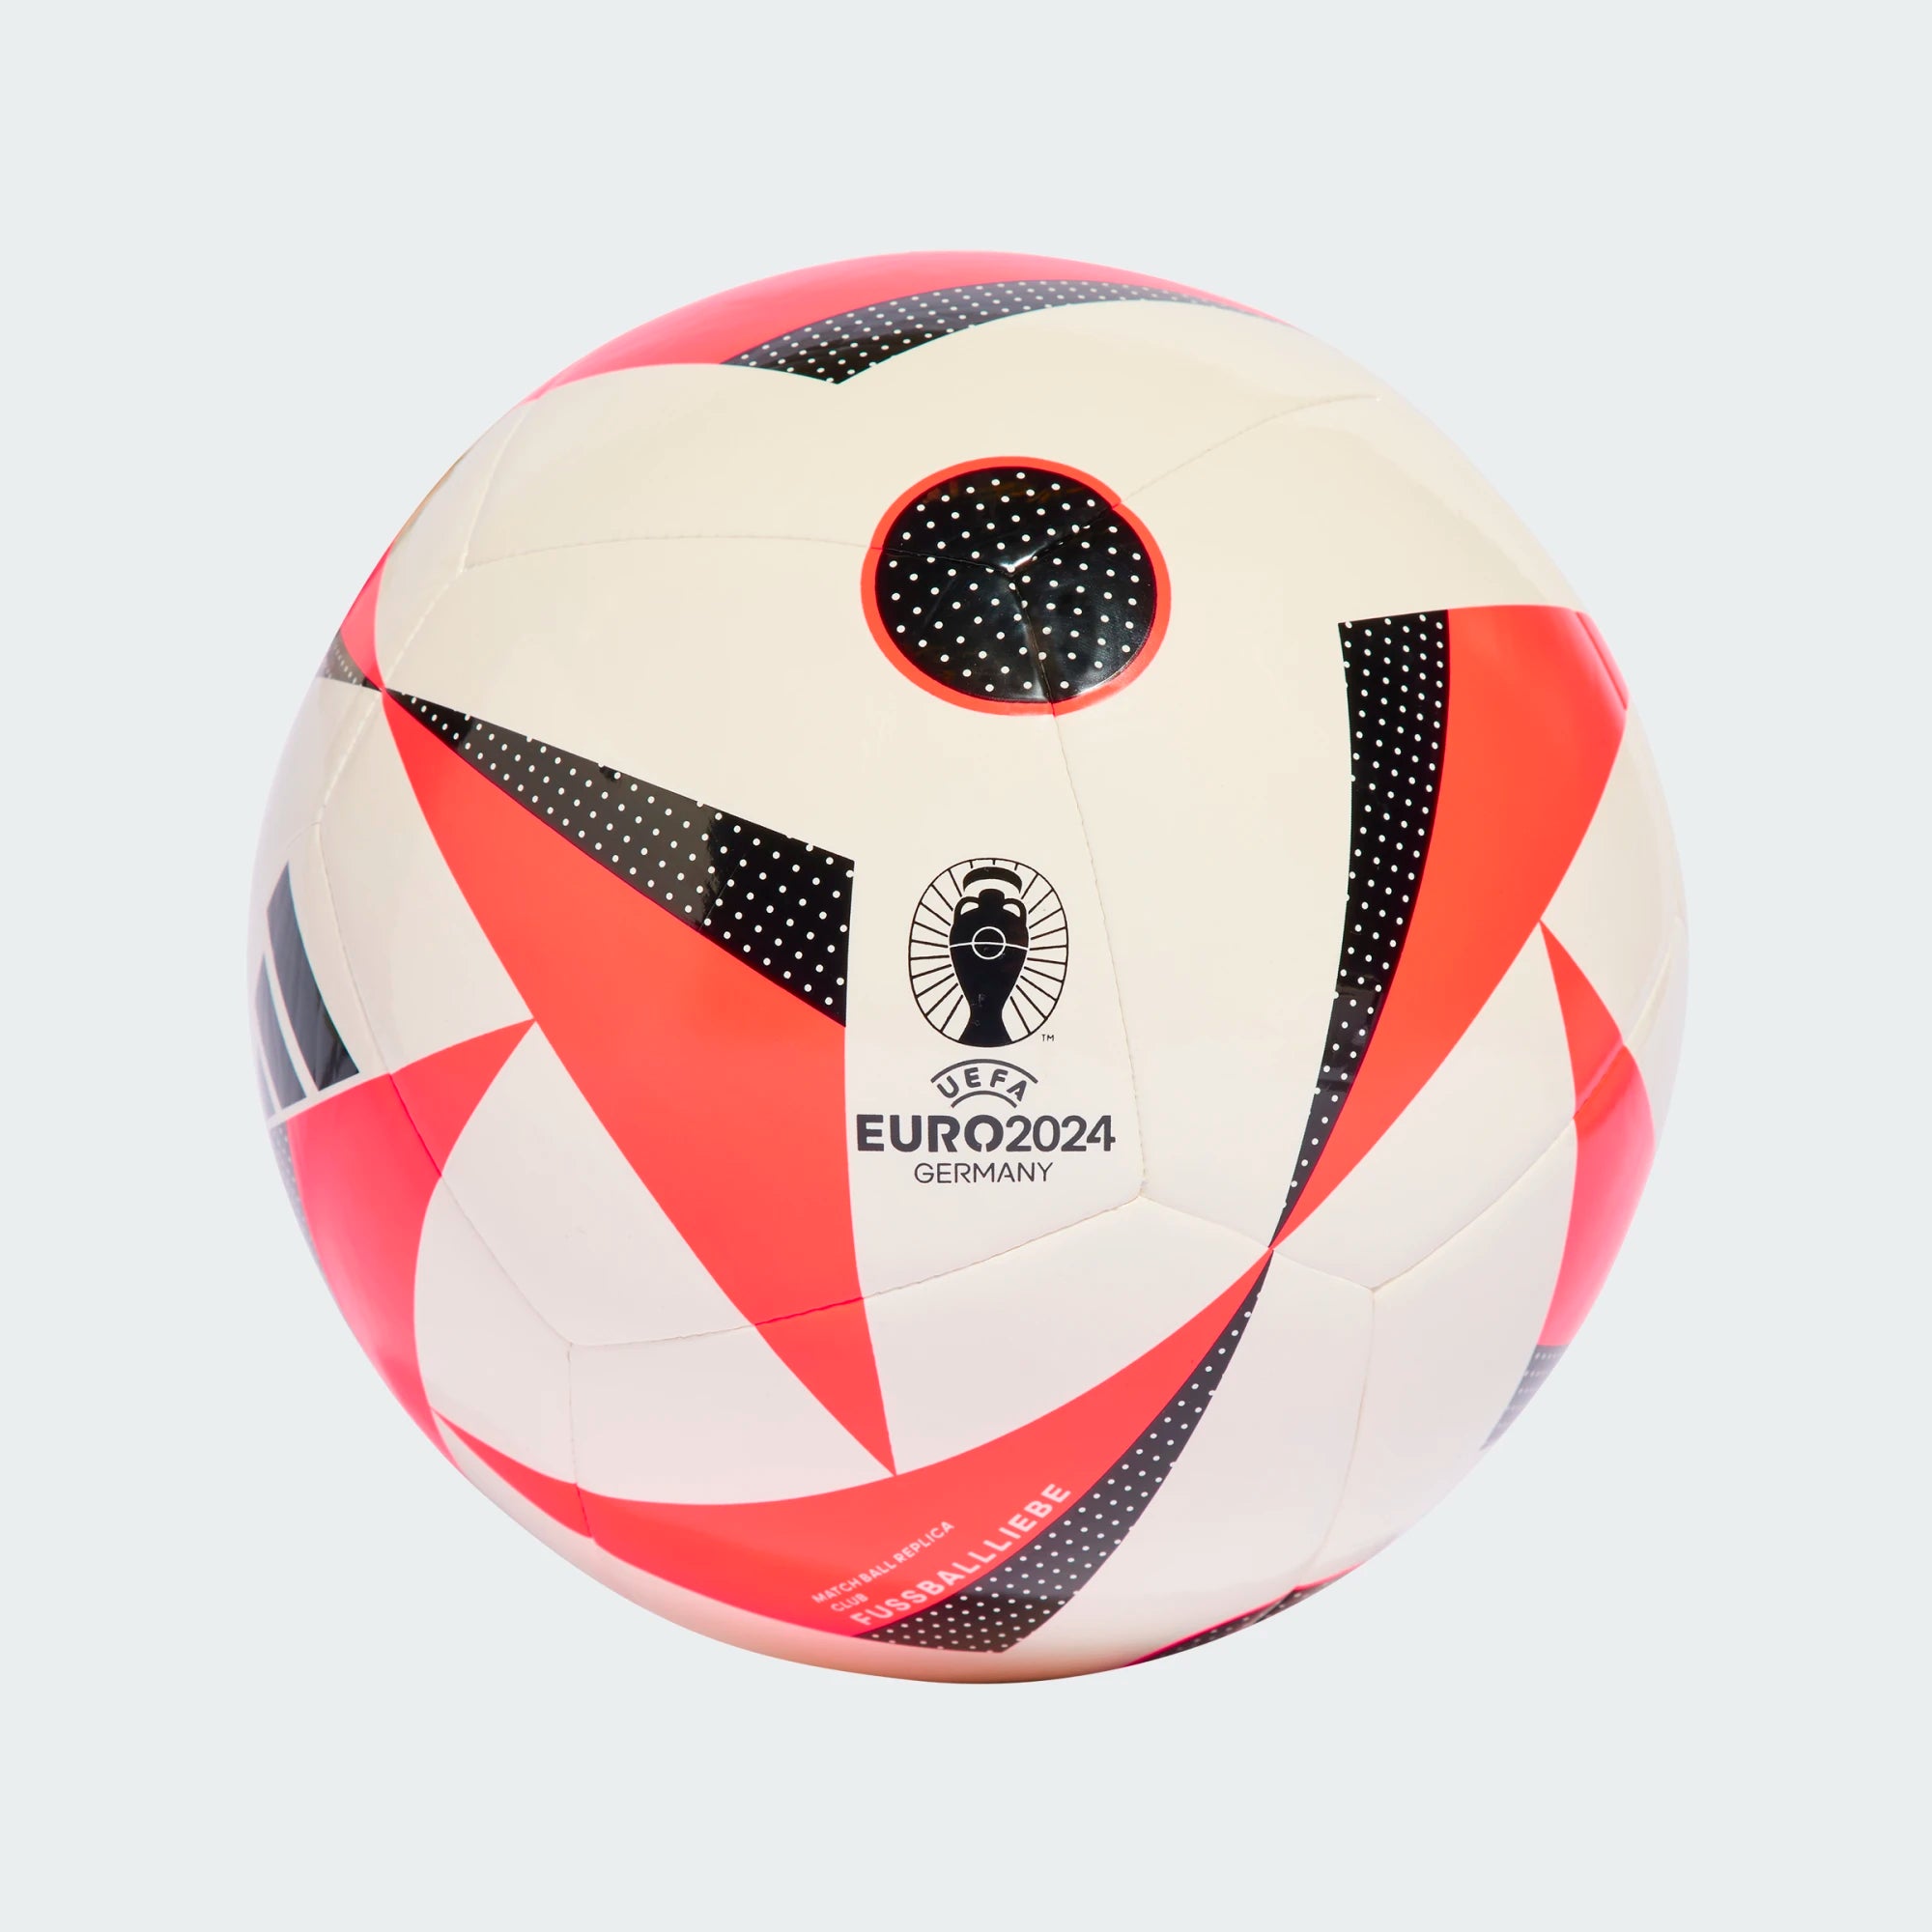 Voici “Fussballliebe”, le ballon officiel de l'Euro 2024 (VIDÉO et